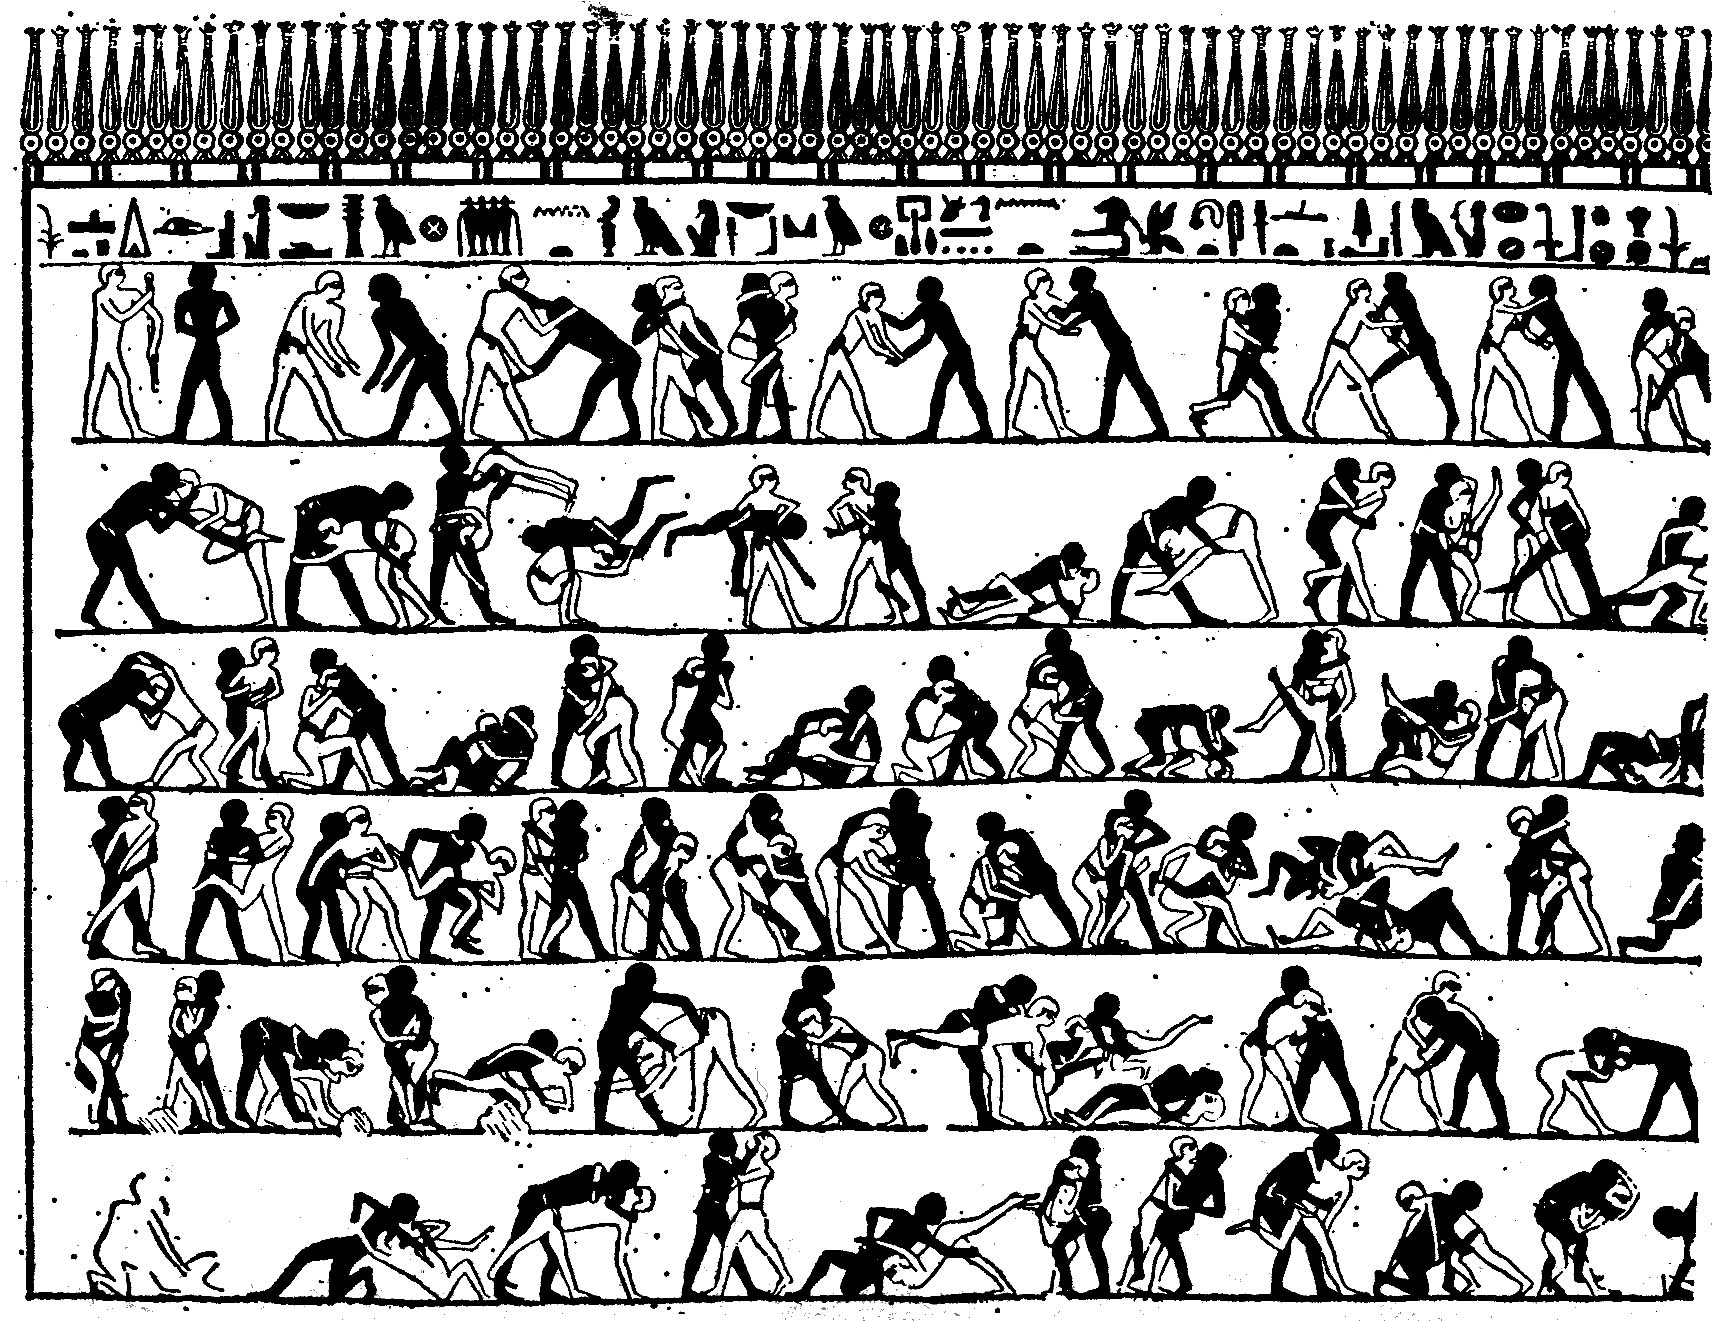 Représentation égyptienne de scènes de lutte, avec nombreux personnages à colorier